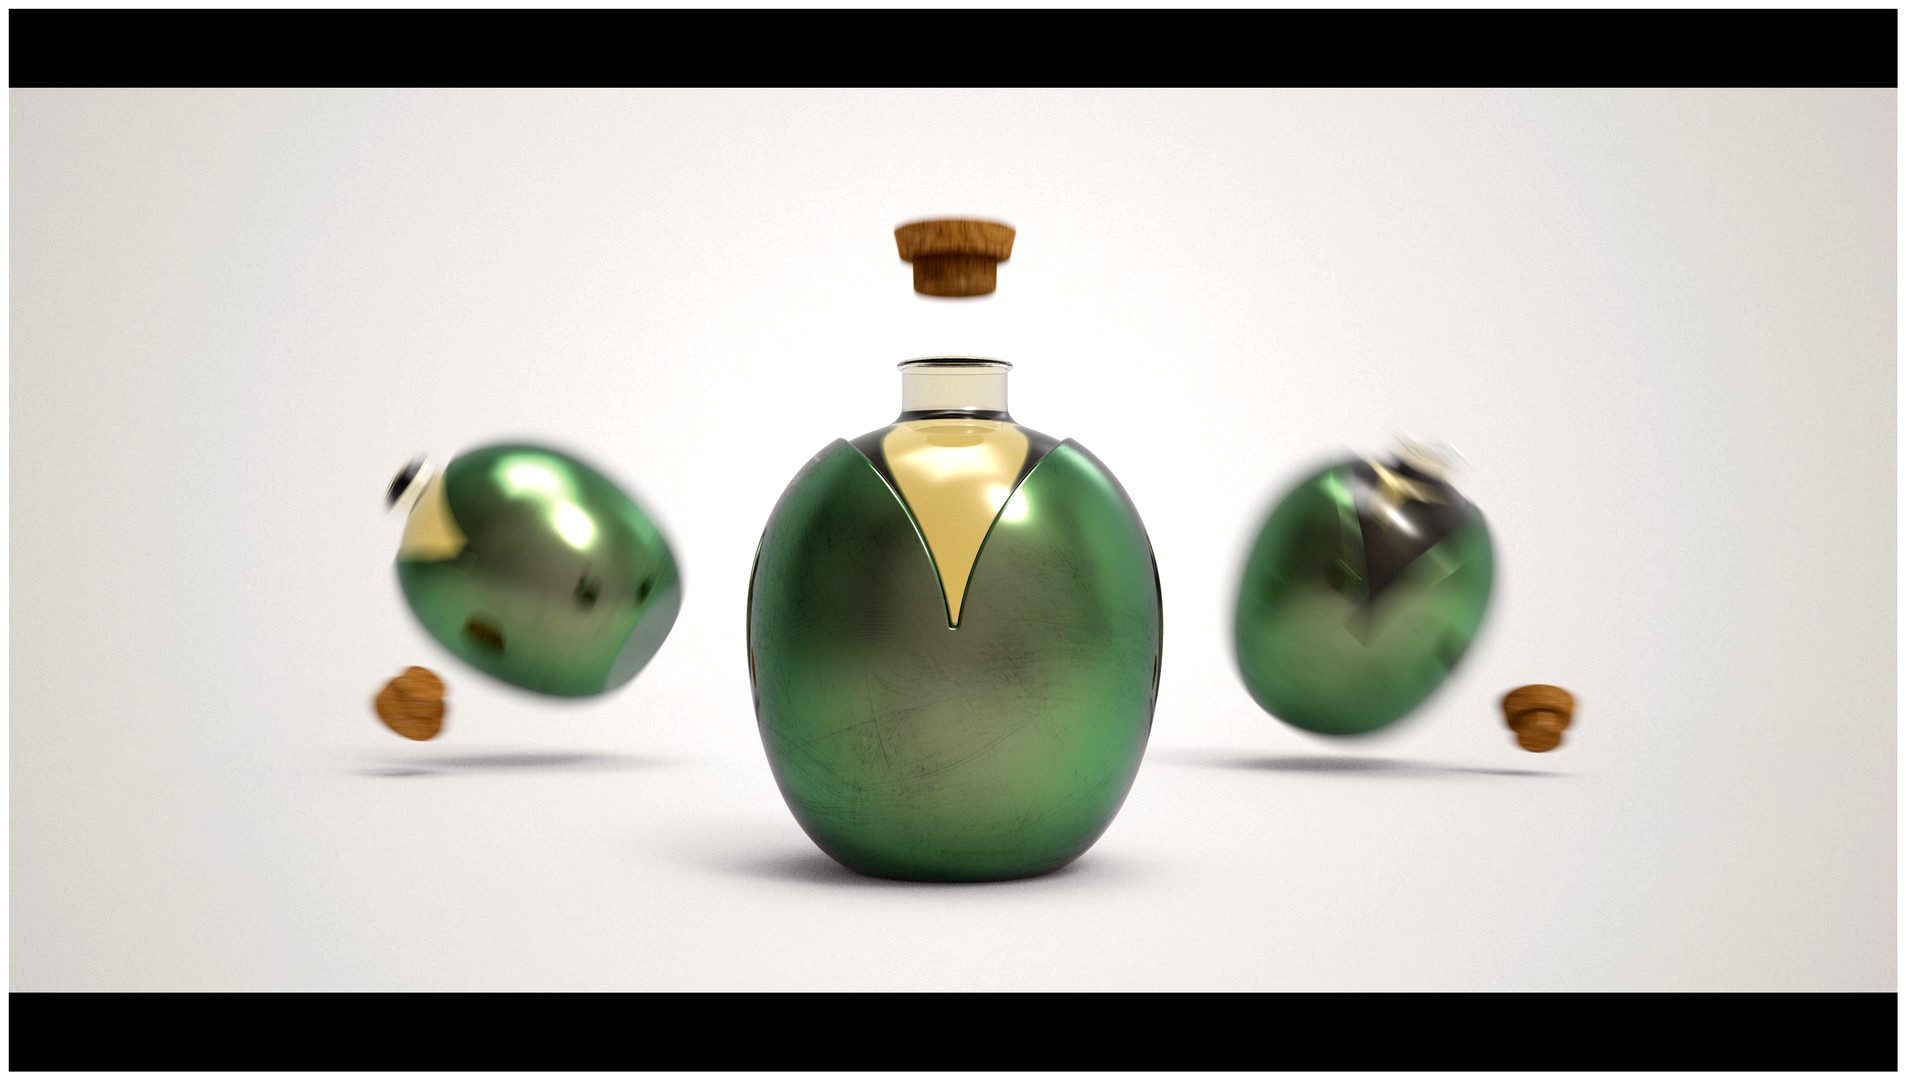 Oil bottle Design (Packaging)